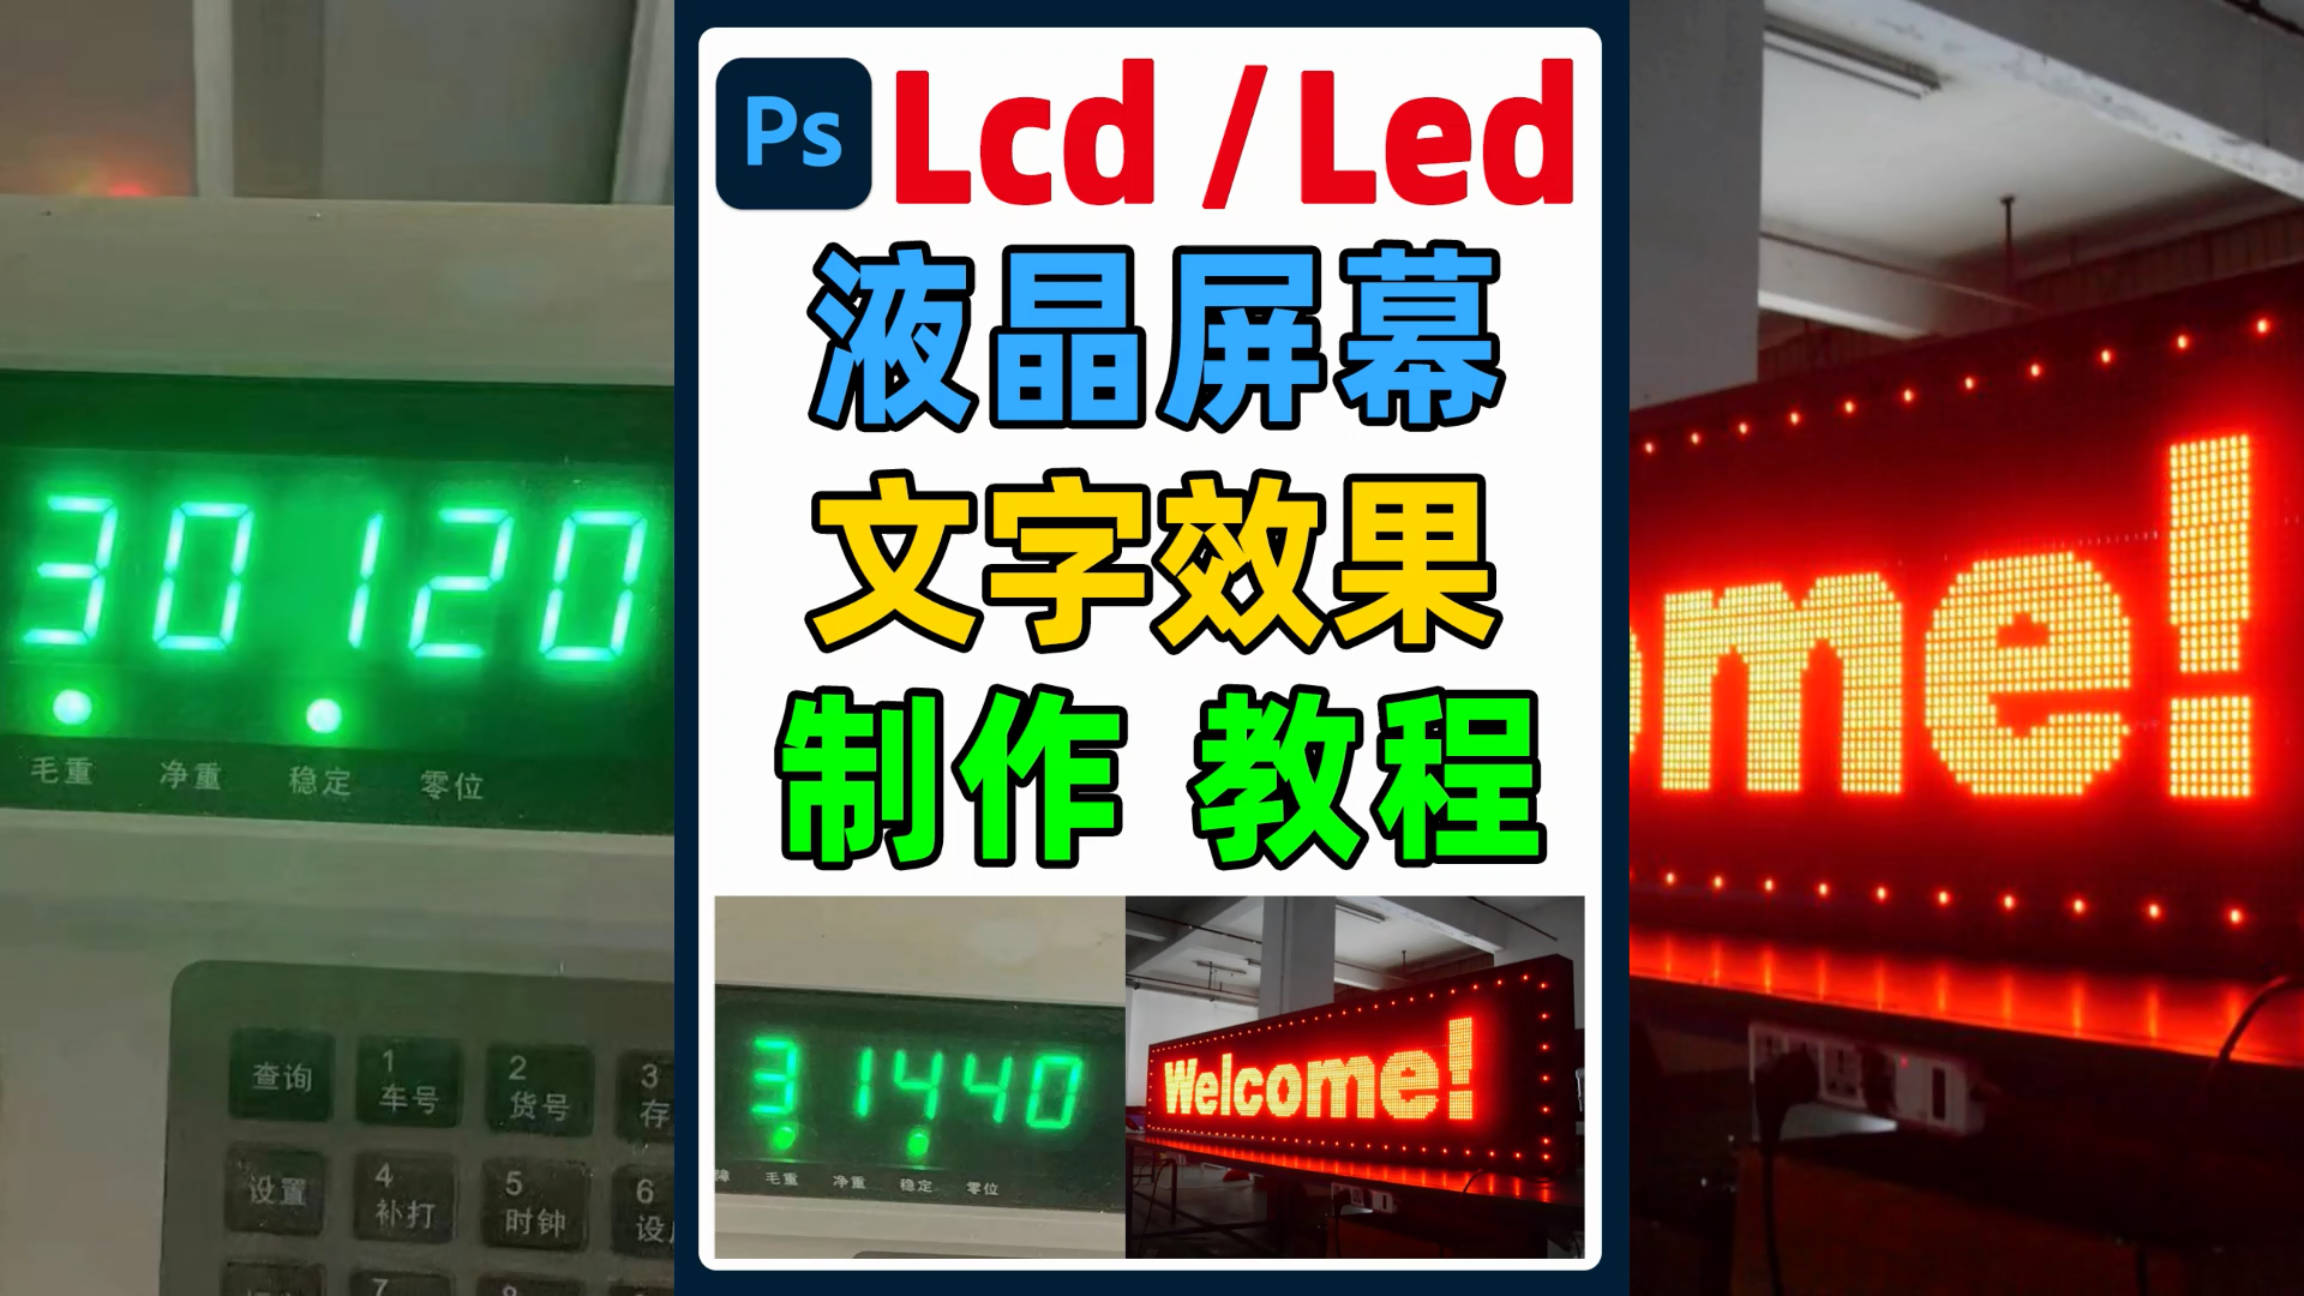 LED液晶显示屏上的文字数字效果在ps中如何制作，字体分享